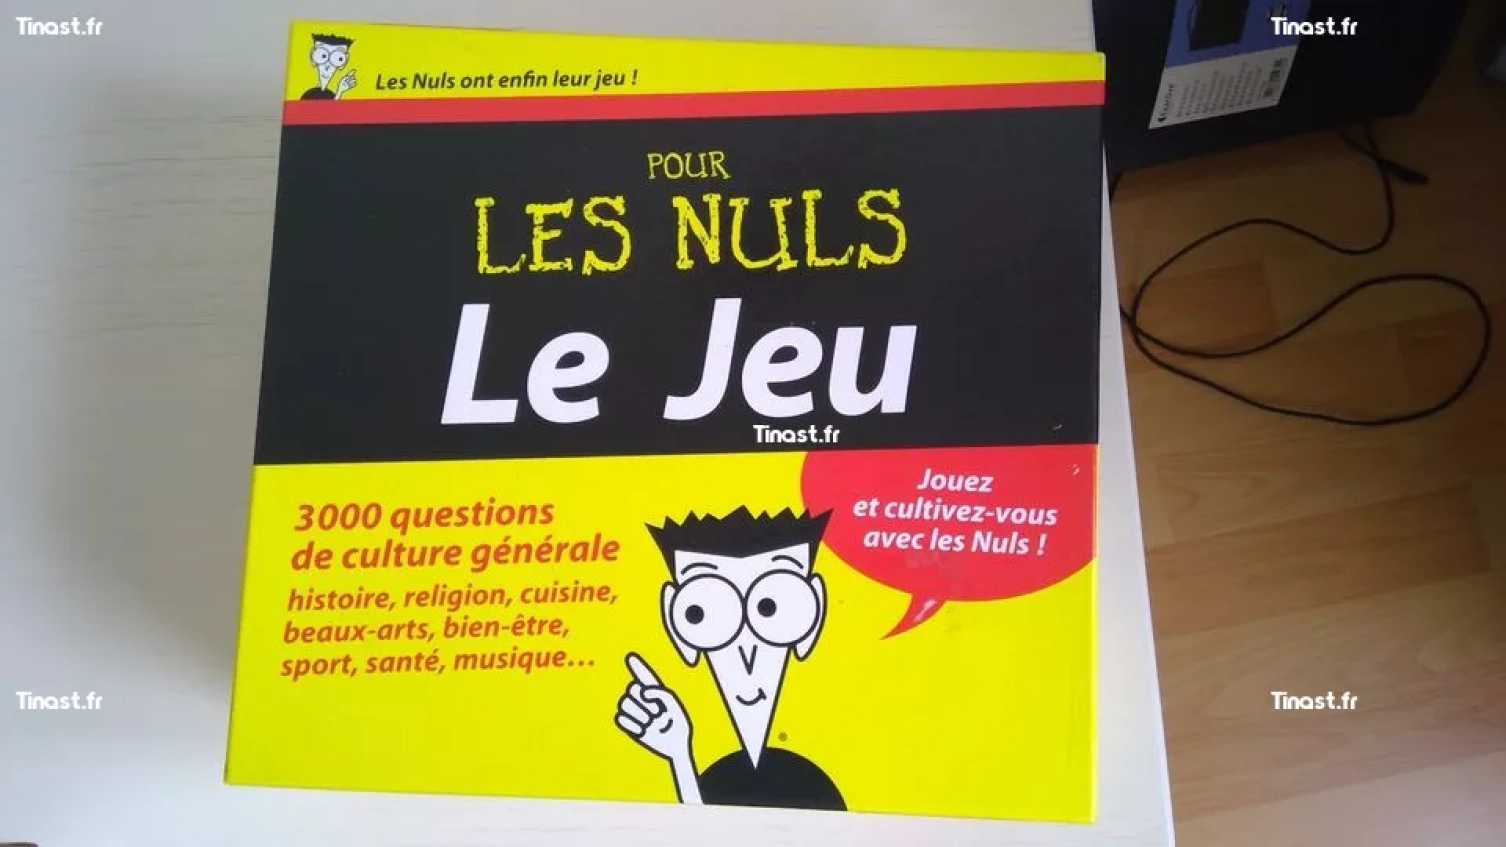 LE JEU POUR LES NULS (first team)